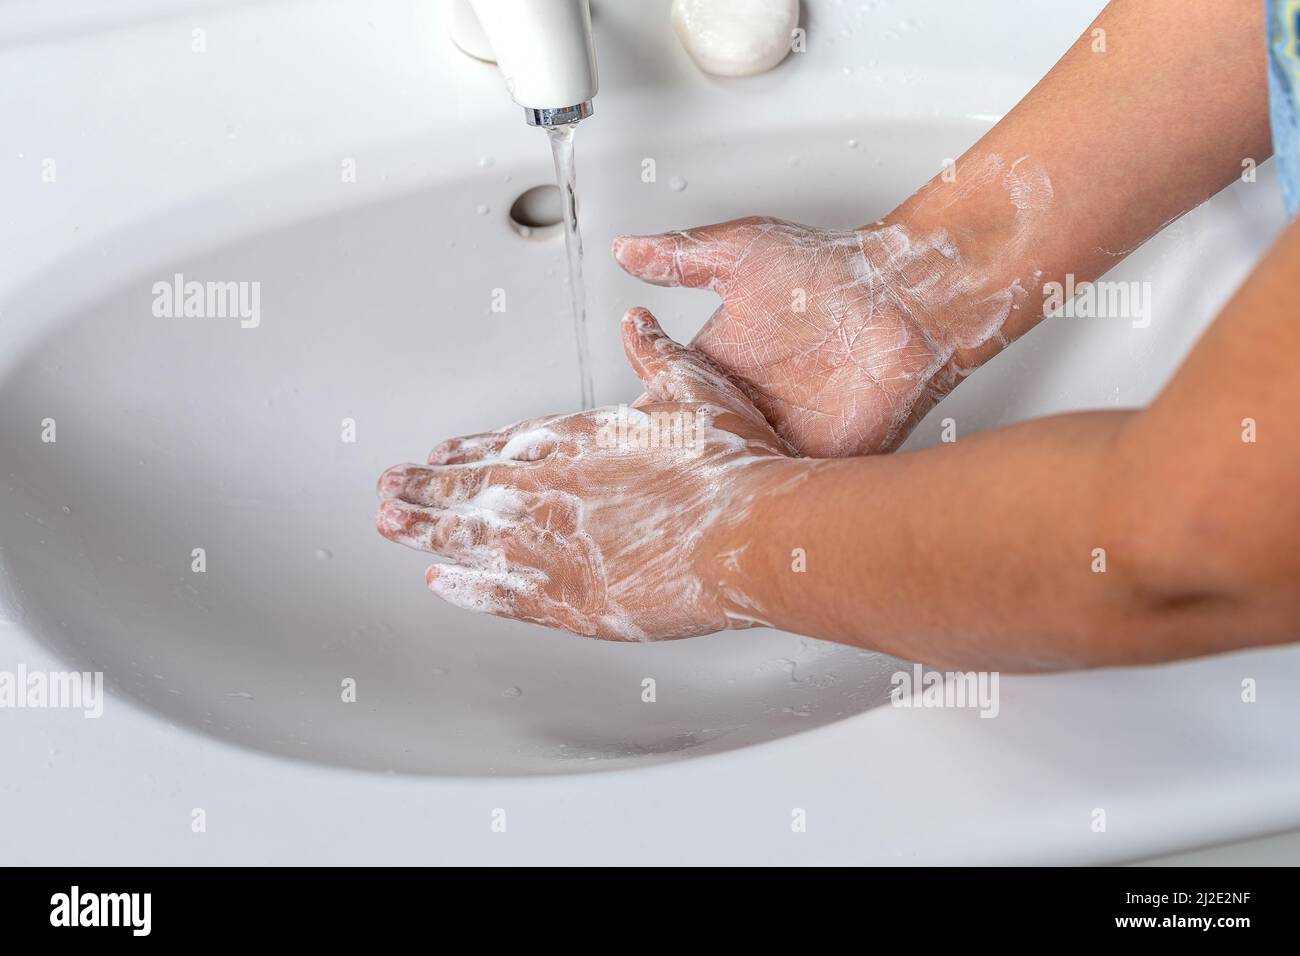 Femme se lavant la main avec de la mousse de savon et de l'eau du robinet dans la salle de bains. Nettoyer la main sous le robinet de l'évier pour l'hygiène personnelle afin de prévenir la grippe et le coronavirus. Bonne procédure de lavage des mains pour tuer les bactéries, le virus Banque D'Images